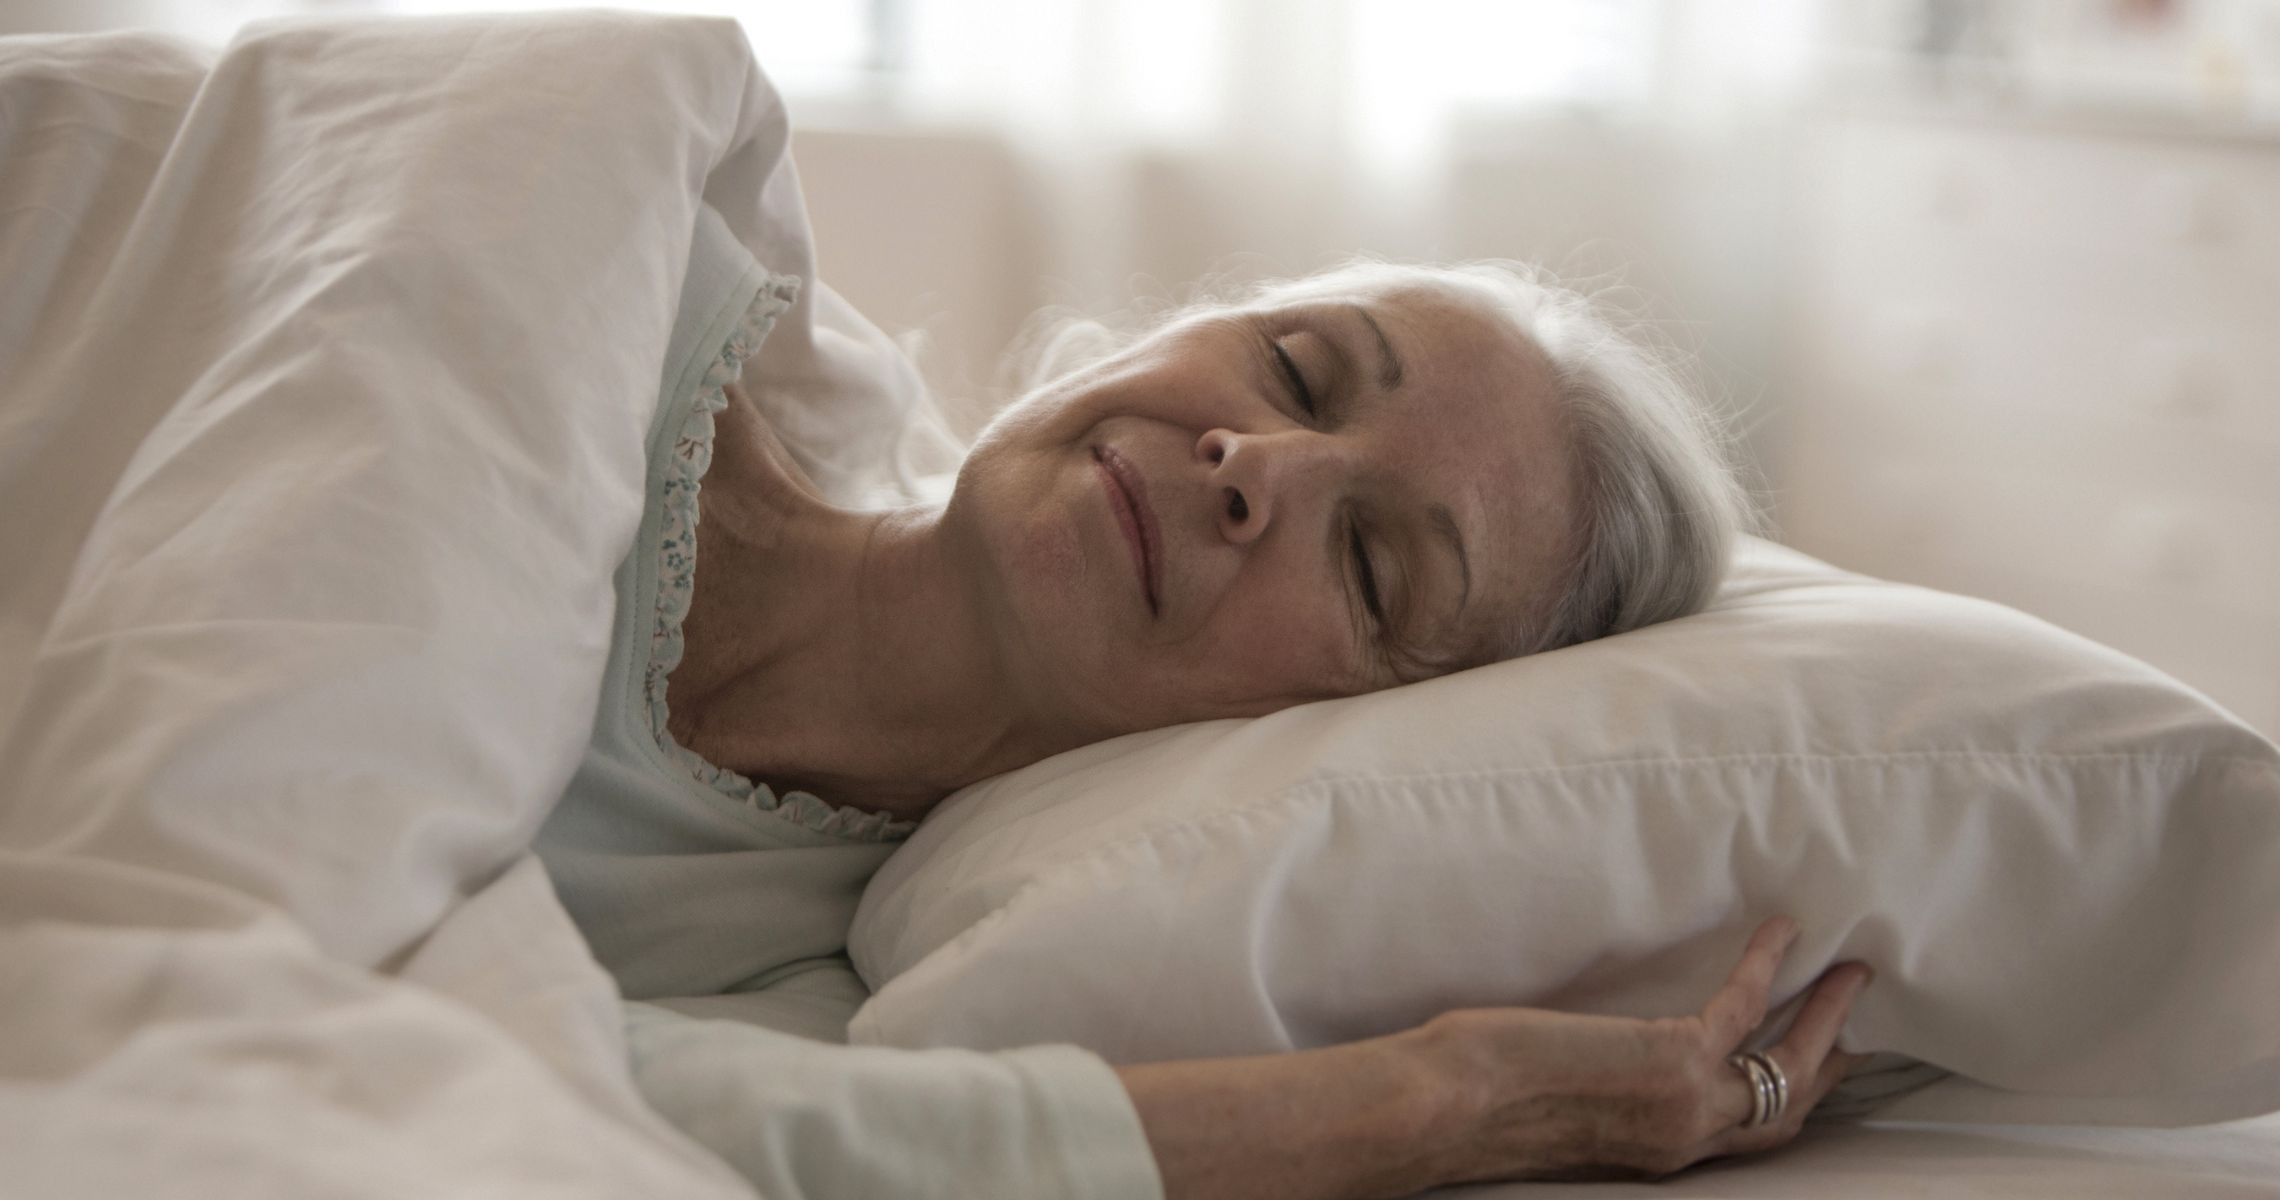 Lời khuyên về giấc ngủ cho người lớn tuổi để làm chậm quá trình lão hóa